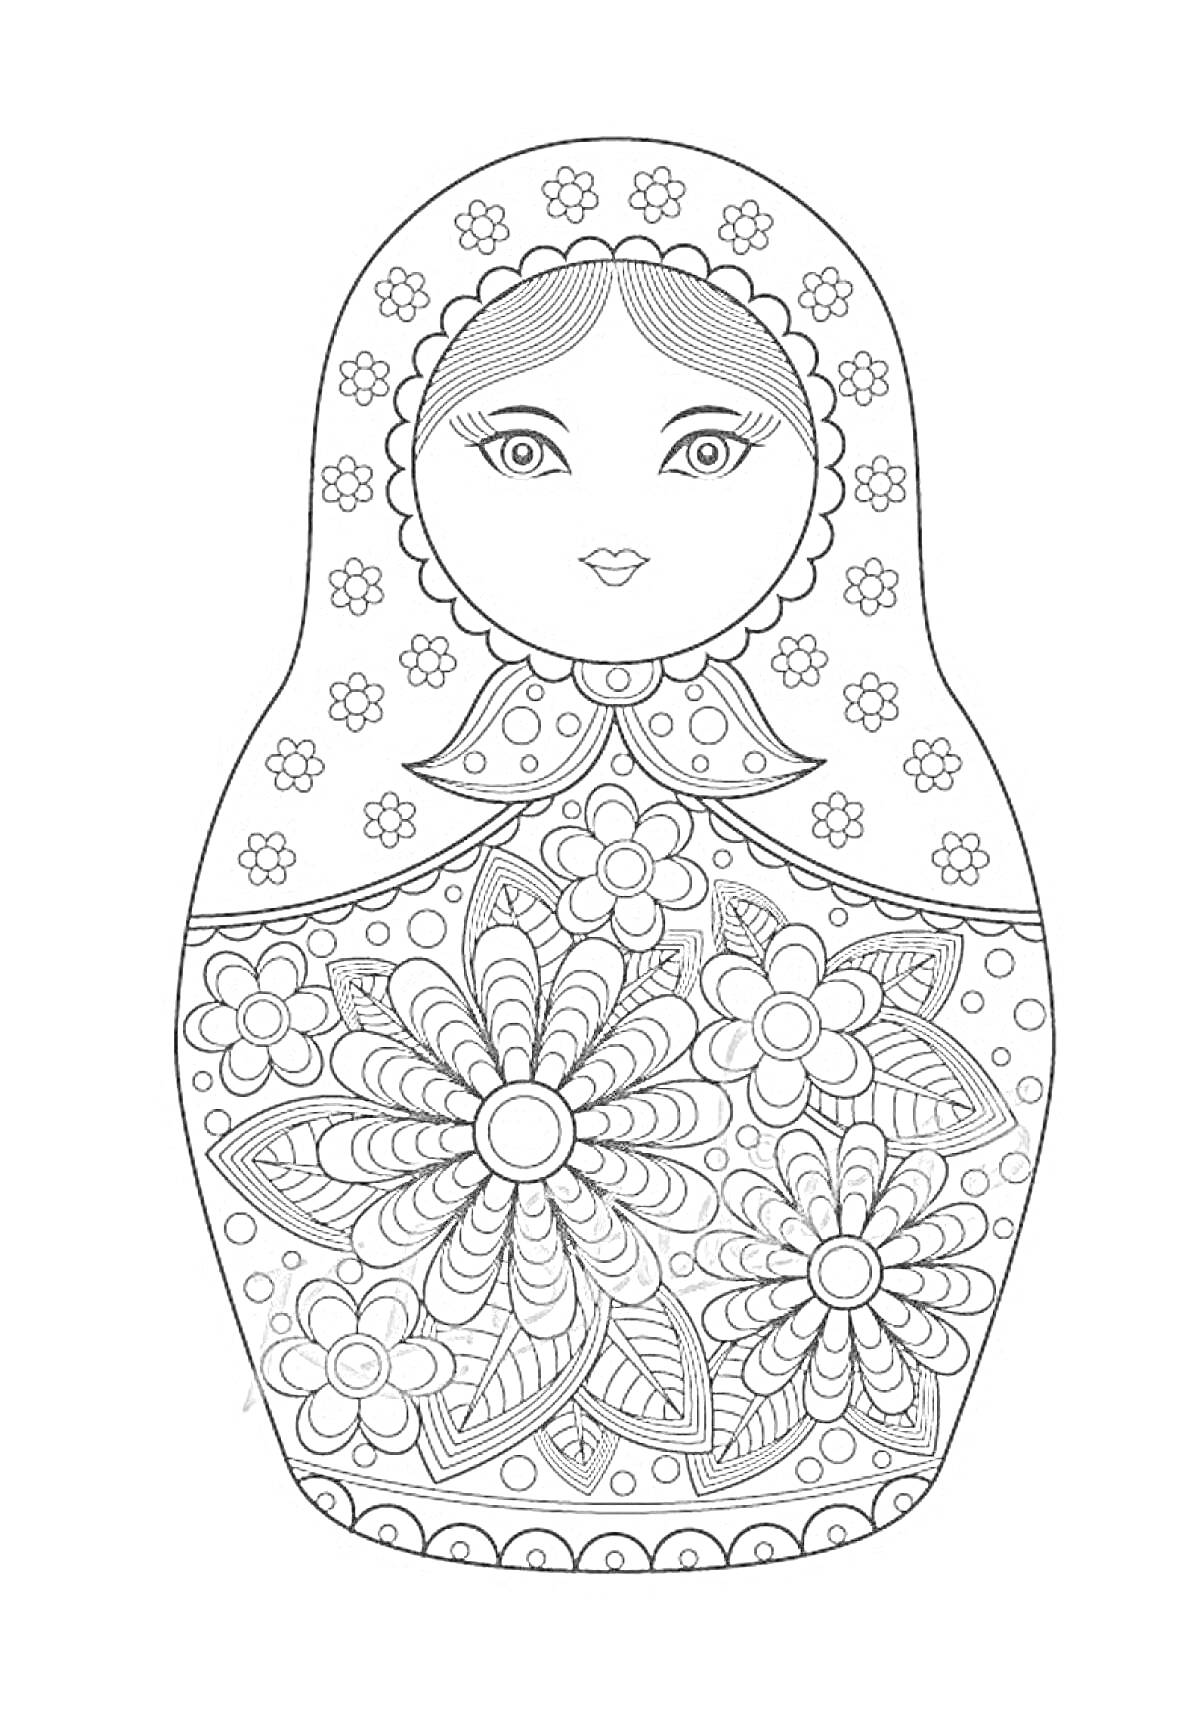 Раскраска Матрешка с цветочным узором, лицевая часть с глазами, носом и ртом, узор на платке, крупные цветы и листья в центральной части